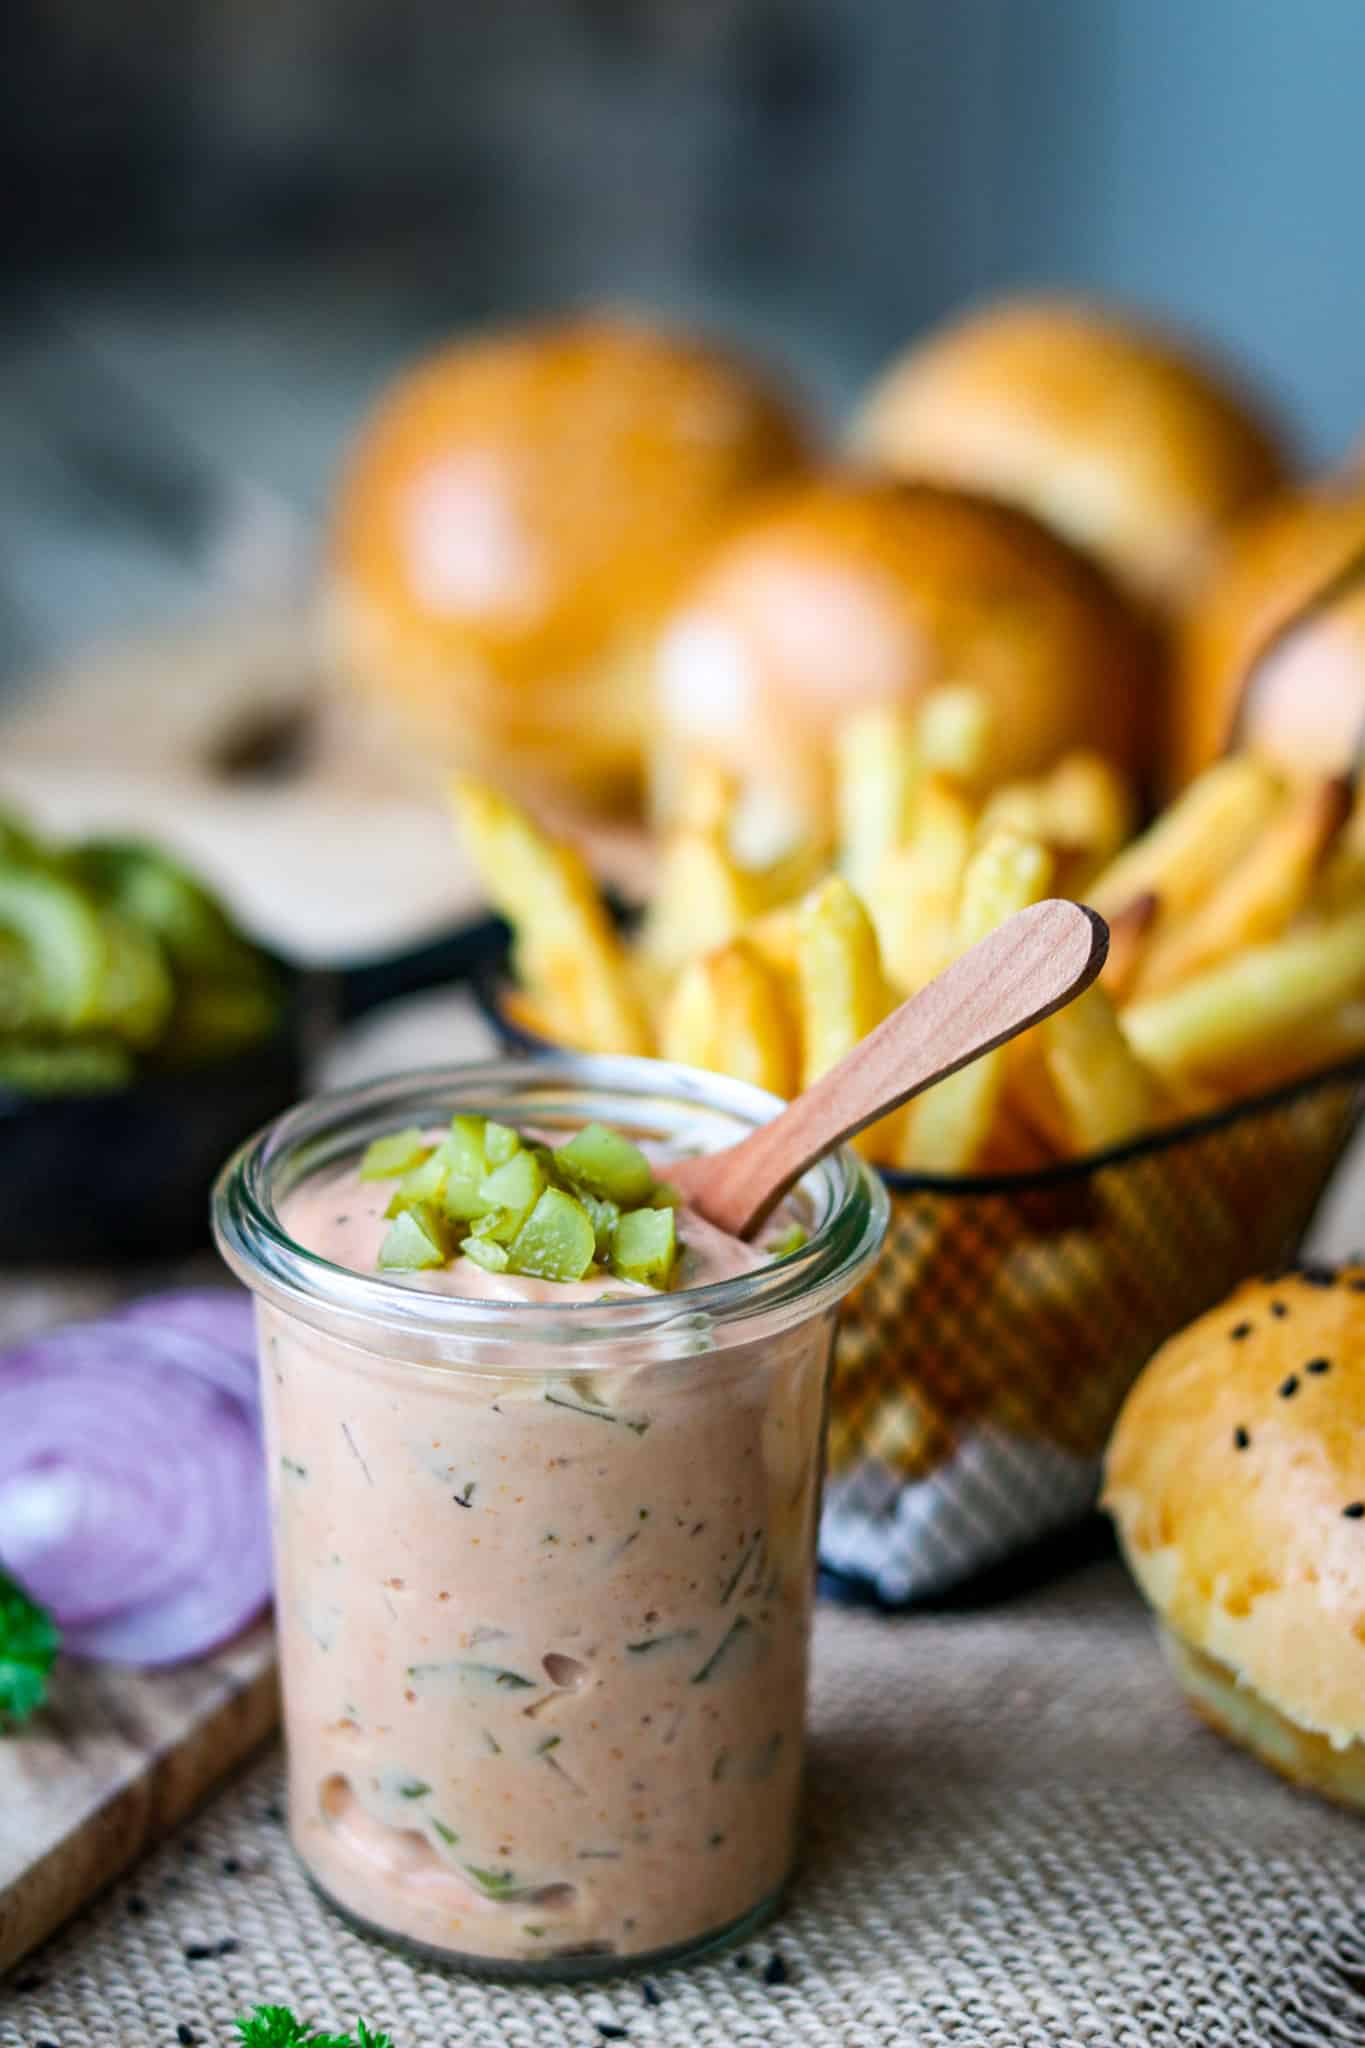 Burger Soße in einem kleinen Glas und einem kleinen Holzlöffel in der Soße, im Hintergrund erkennt man Burger und Pommes und rote Zwiebelringe, alles steht auf einem rustikalen Holzuntergrund.